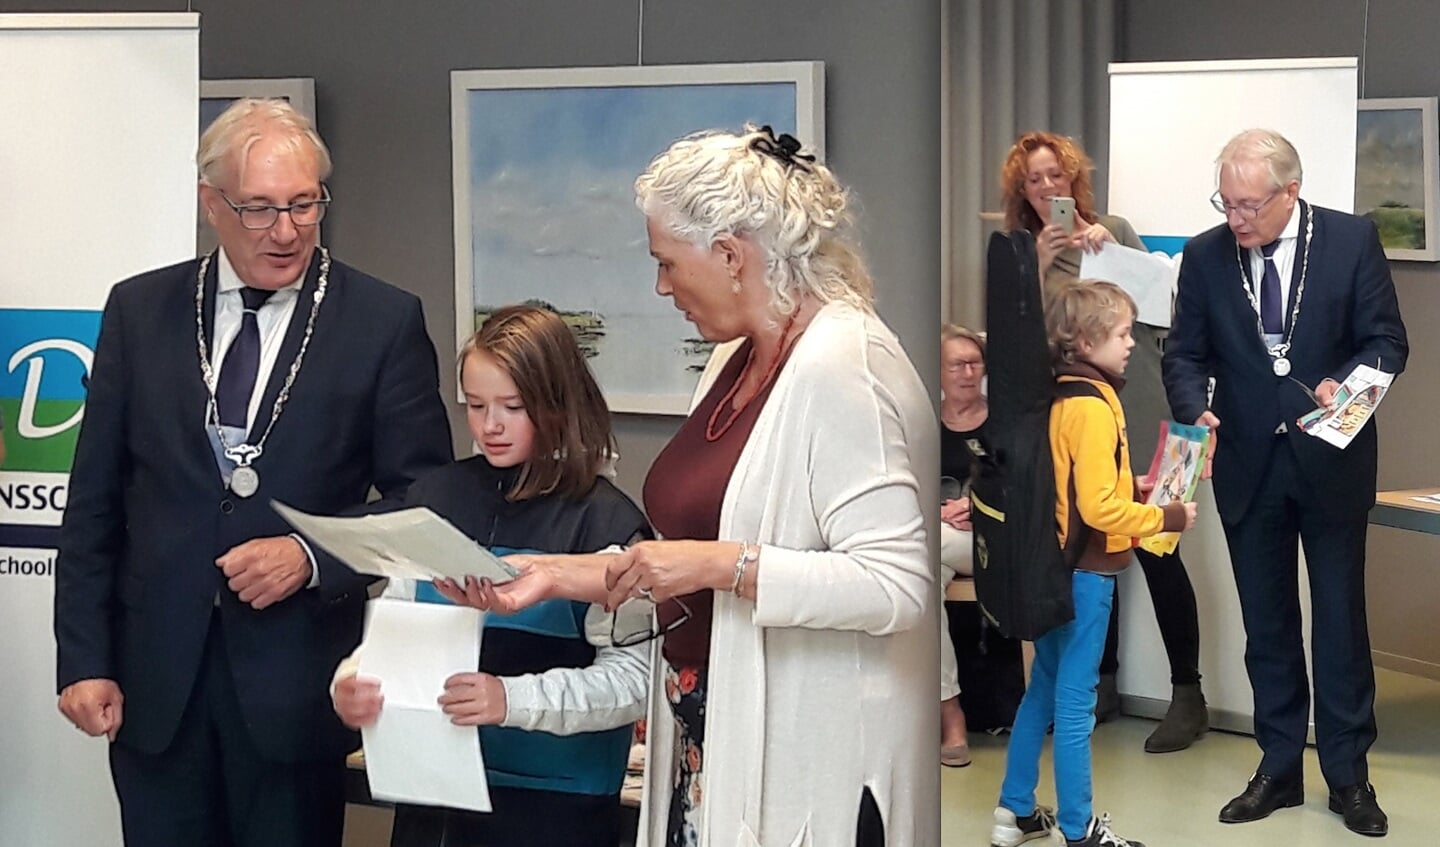 Prijswinnaars Aurora en Piet met de burgemeester
Foto: Agnes Hoogendonk